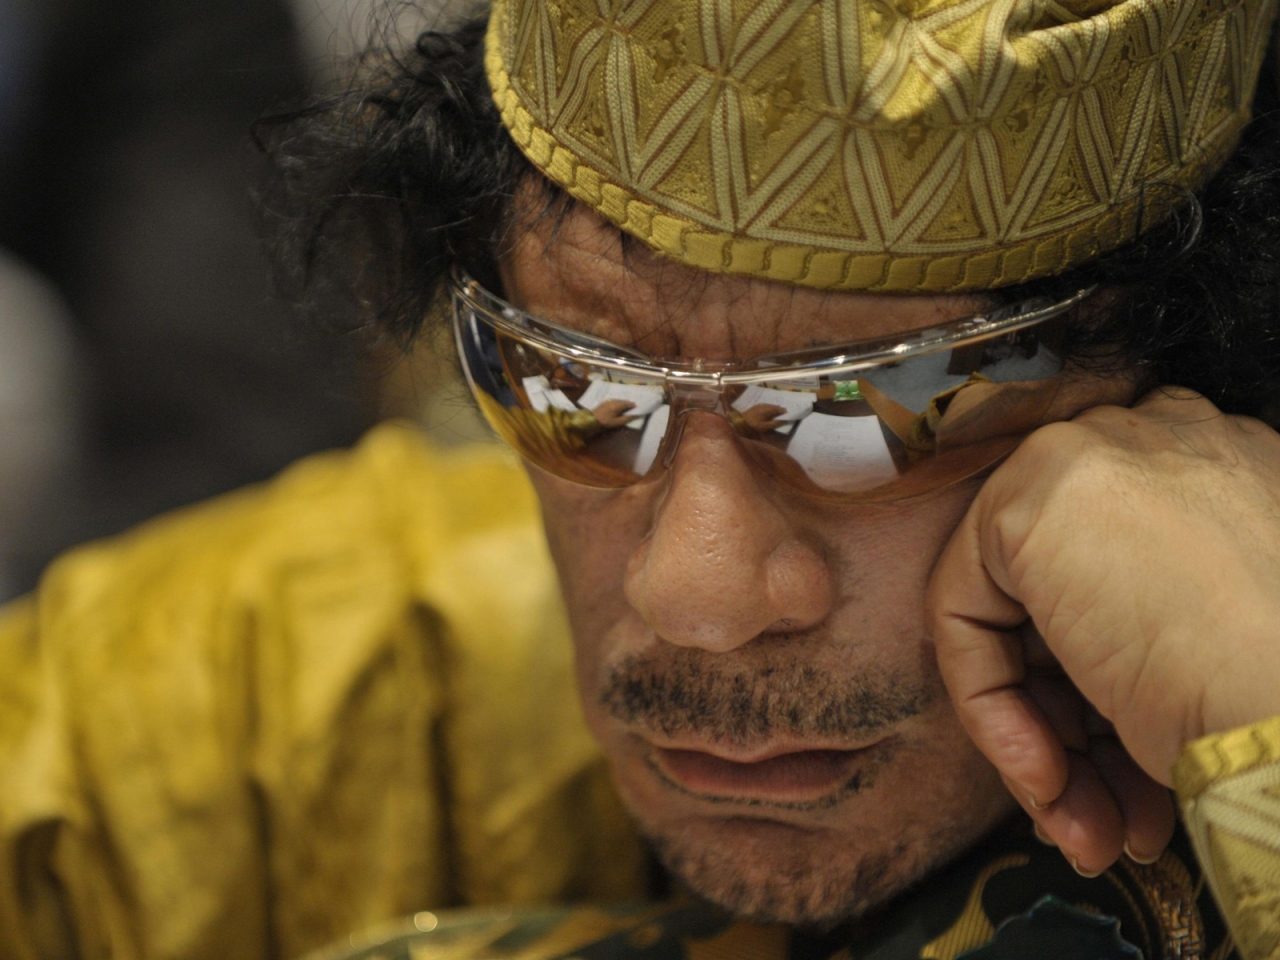 Muammar al Gaddafi for 1280 x 960 resolution